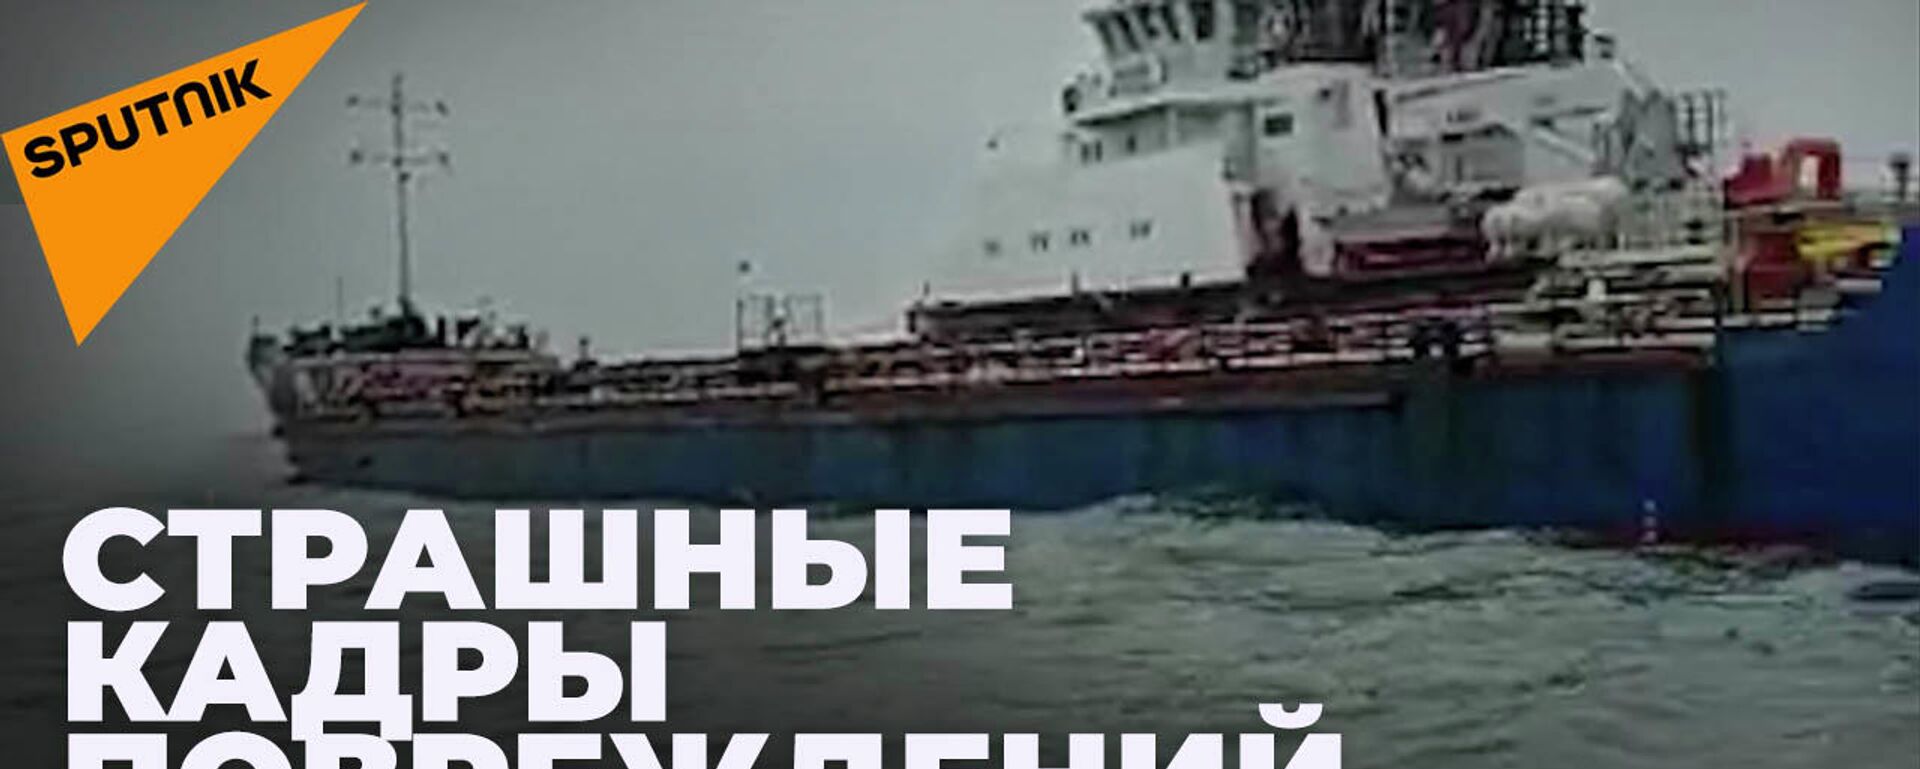 Как выглядит российское судно SGV-FLOT, попавшее под обстрел украинских военных в Азовском море - Sputnik Абхазия, 1920, 24.02.2022